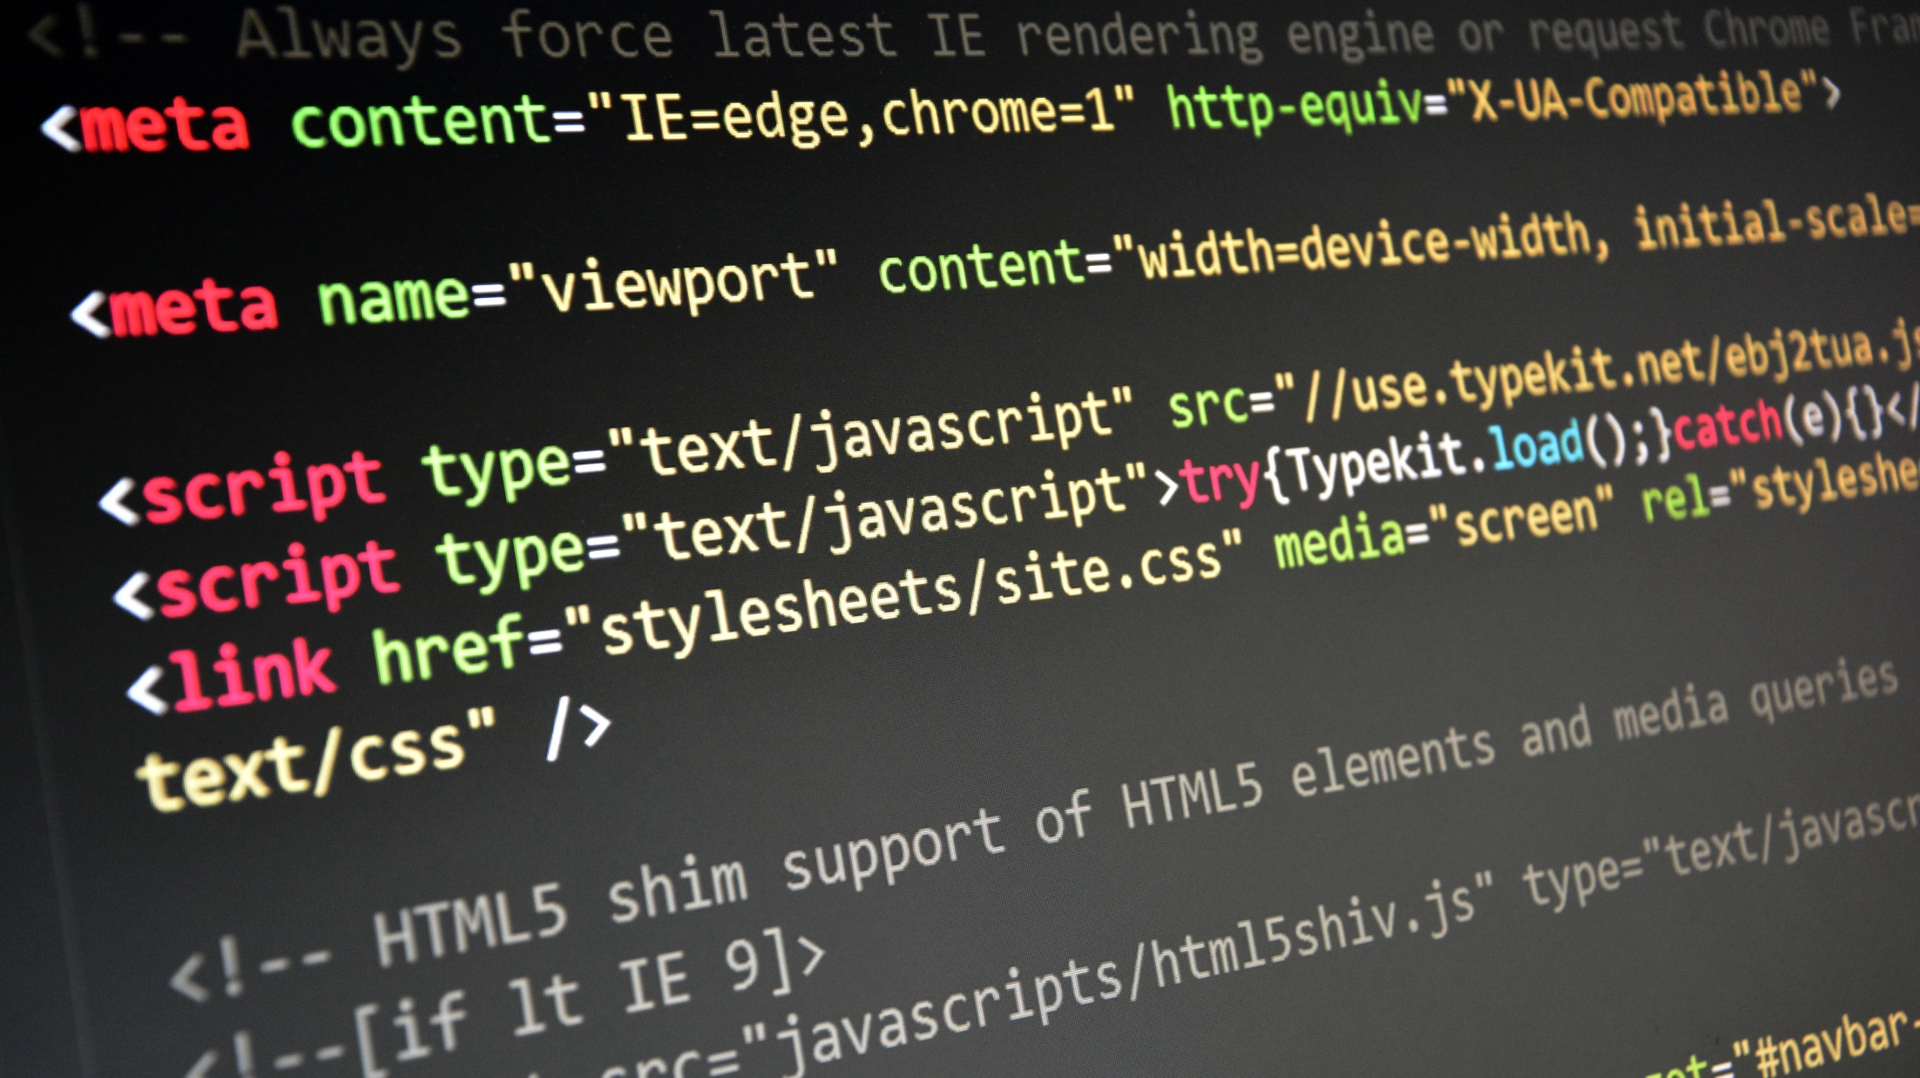 HTML Code